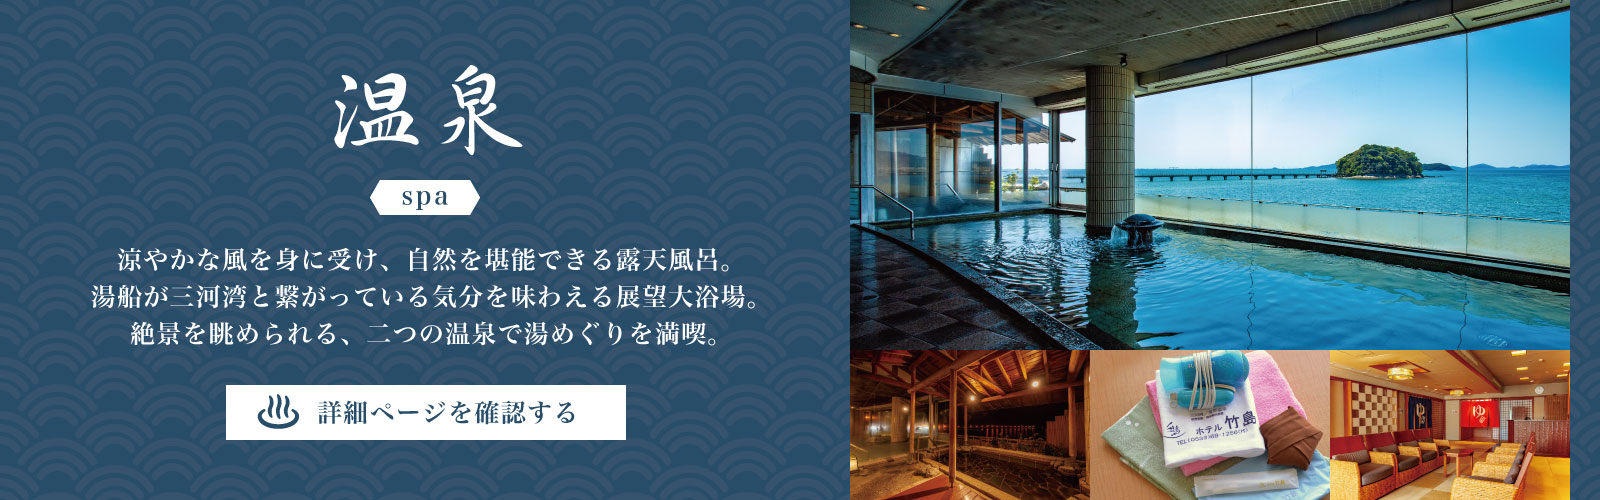 ホテル竹島の温泉